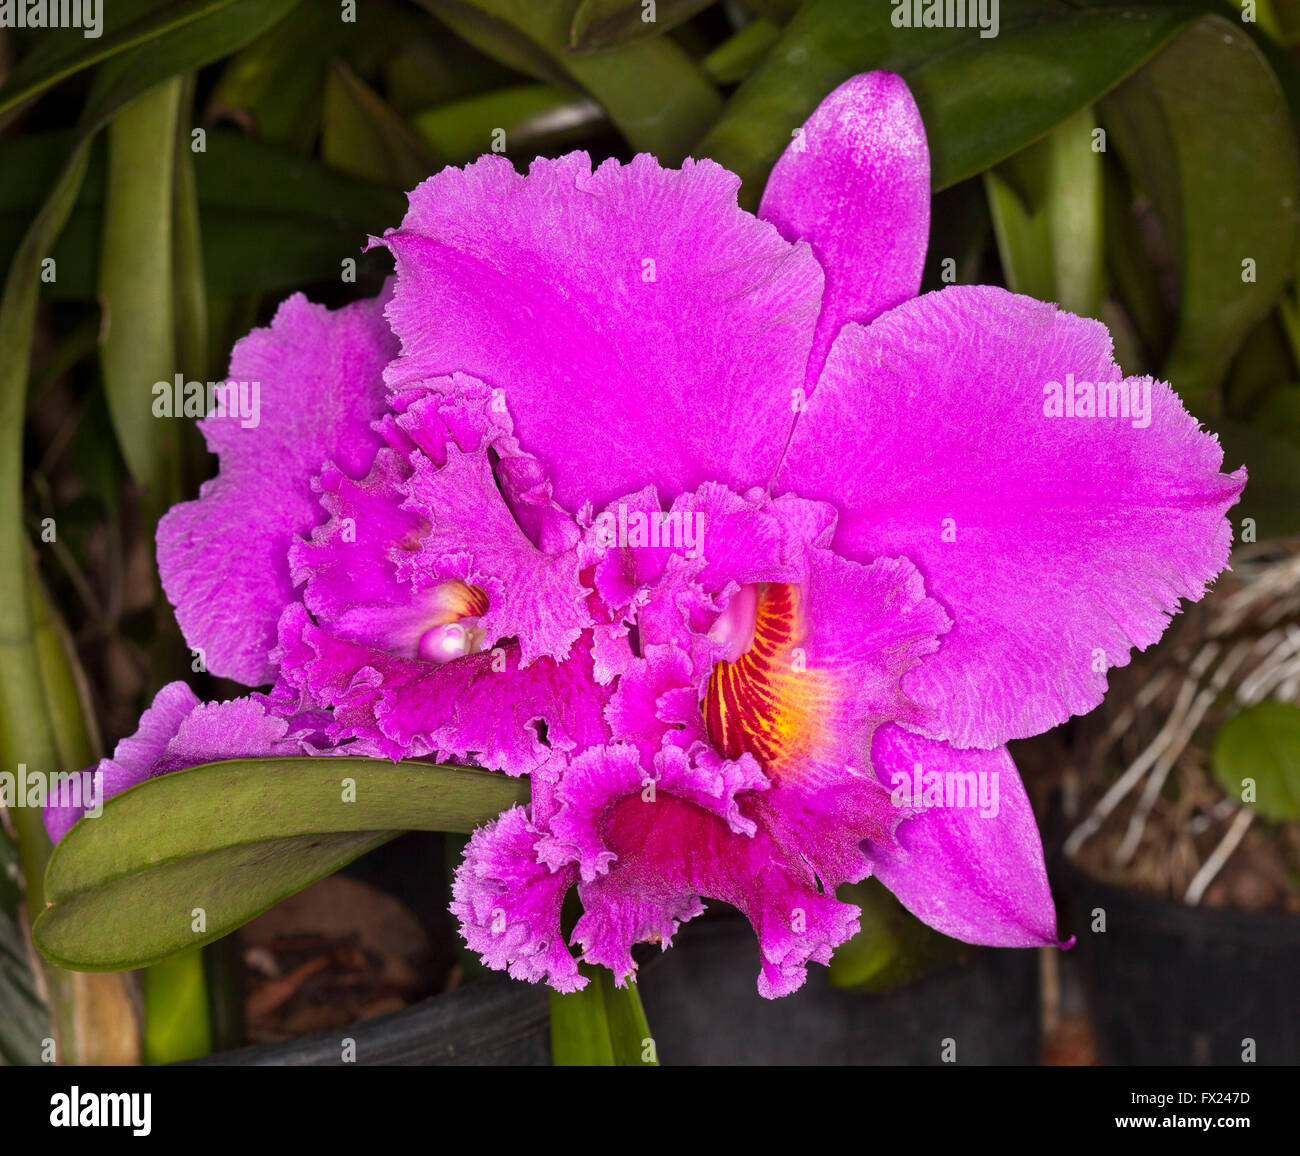 Spektakuläre große lebendige Magenta pink / lila duftenden Blume von Cattleya Orchidee mit Rüschen eingefasst, Blüten auf dunklem Hintergrund Stockfoto